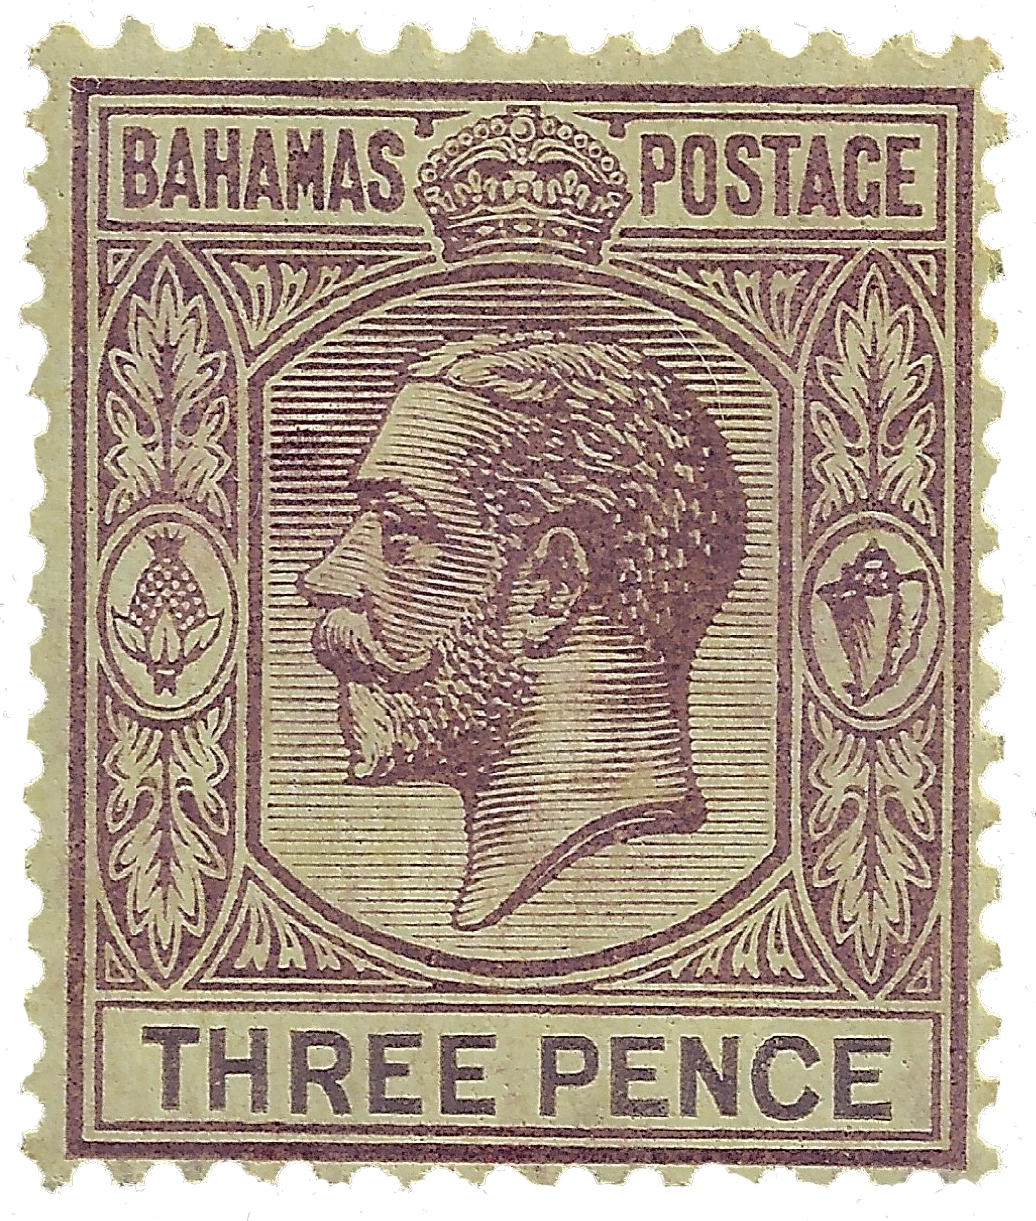 3p 1921-1934, Three Pence Scott 76